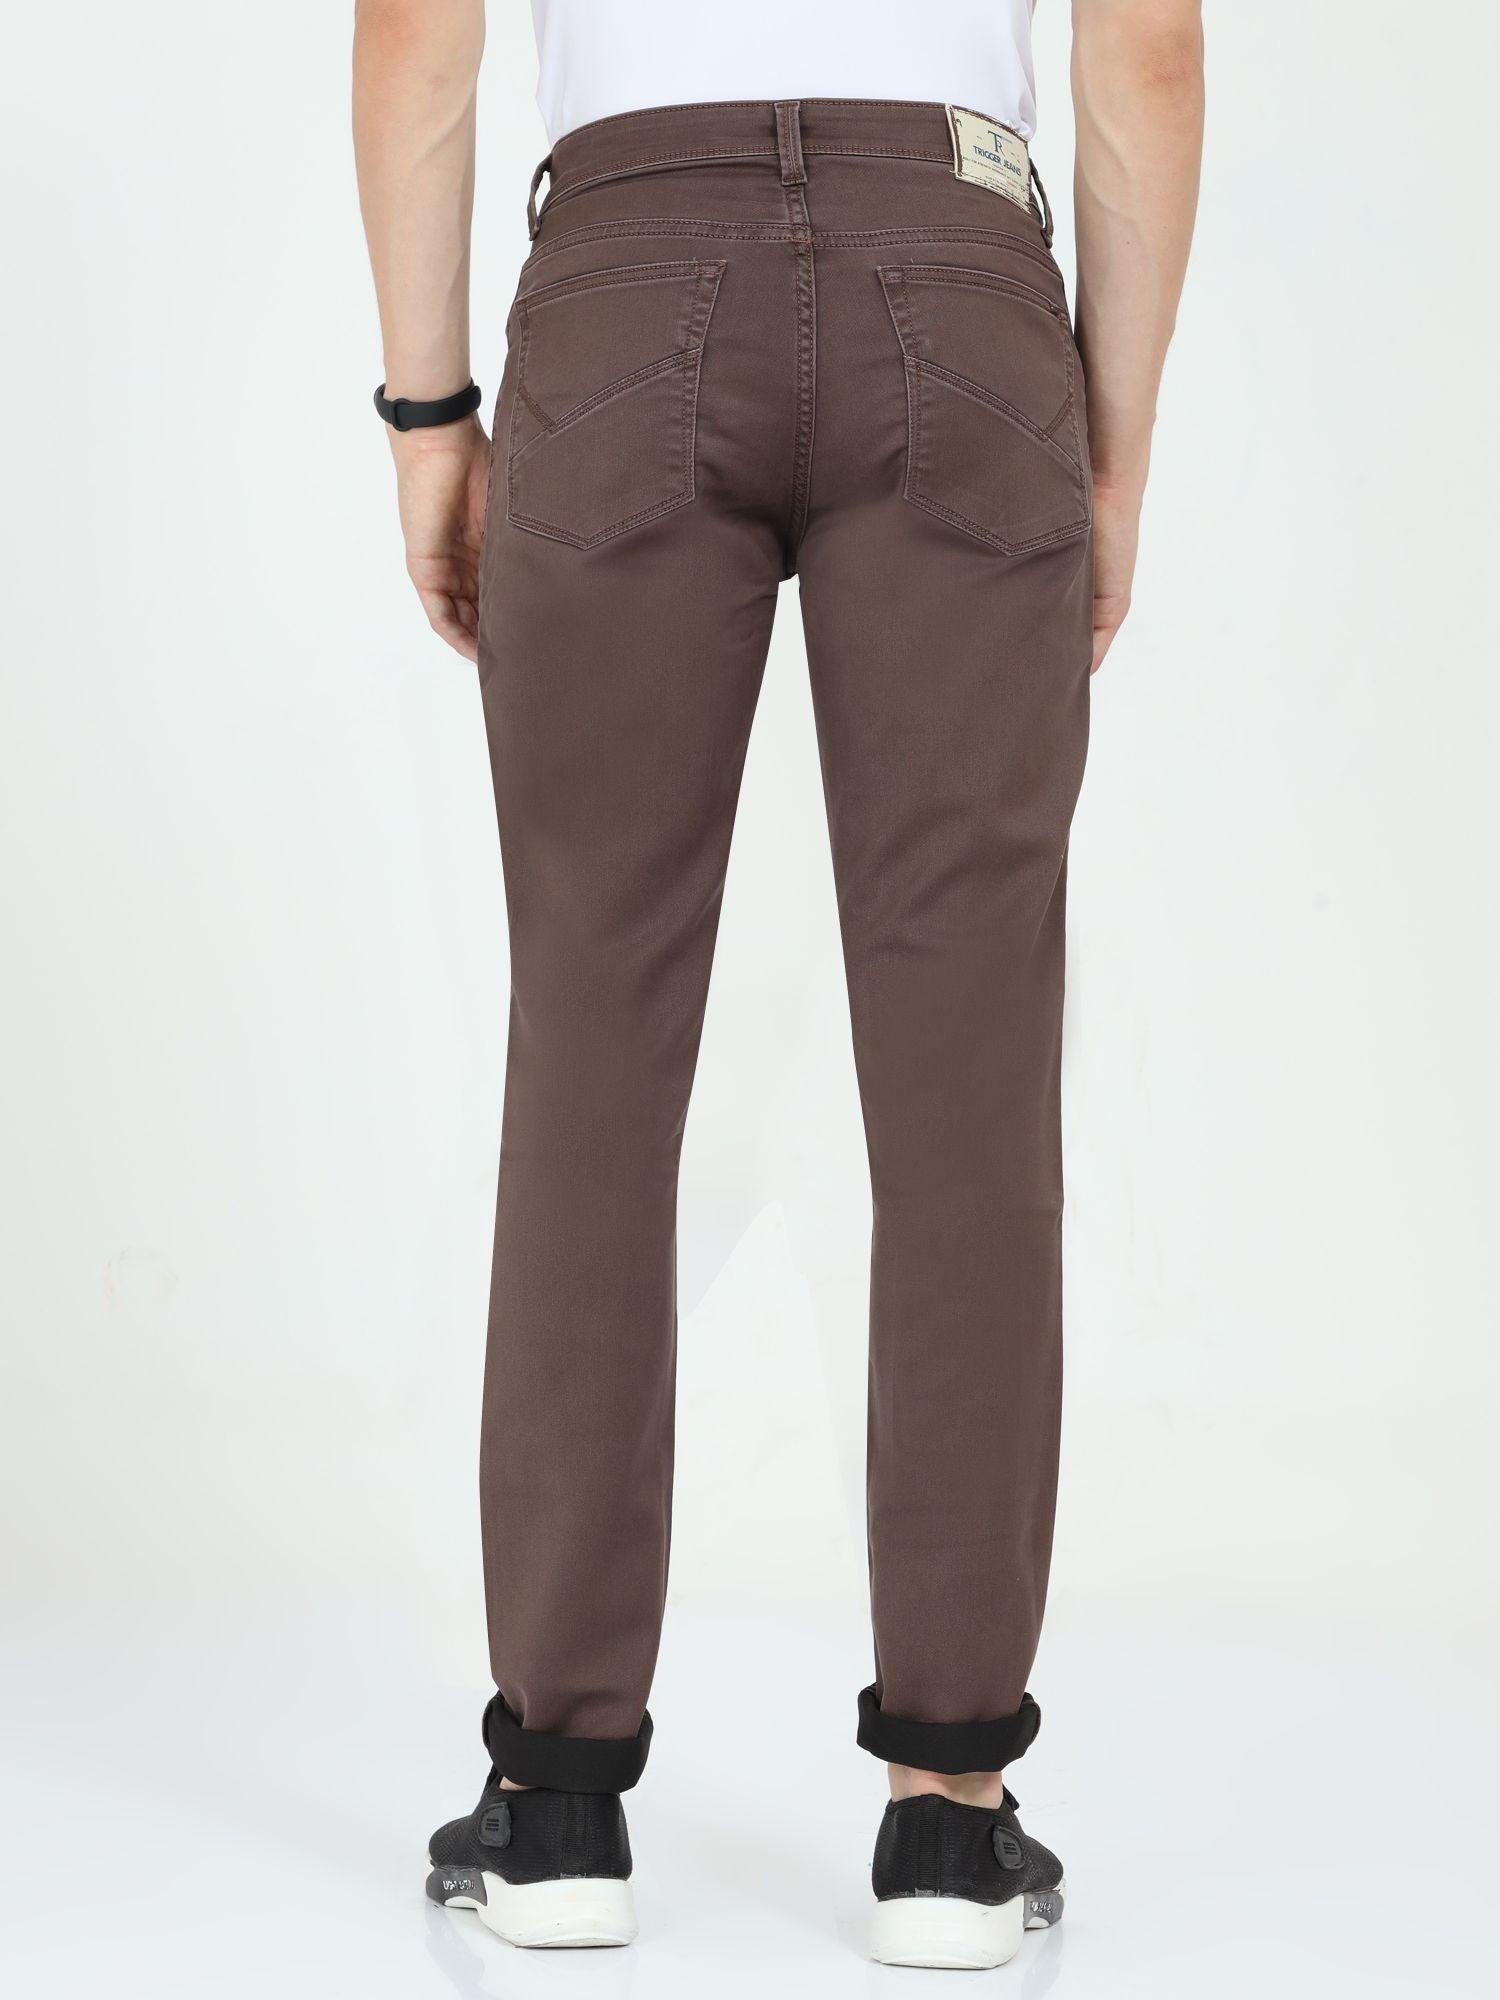 Men's Slim Fit Jeans - Brown 